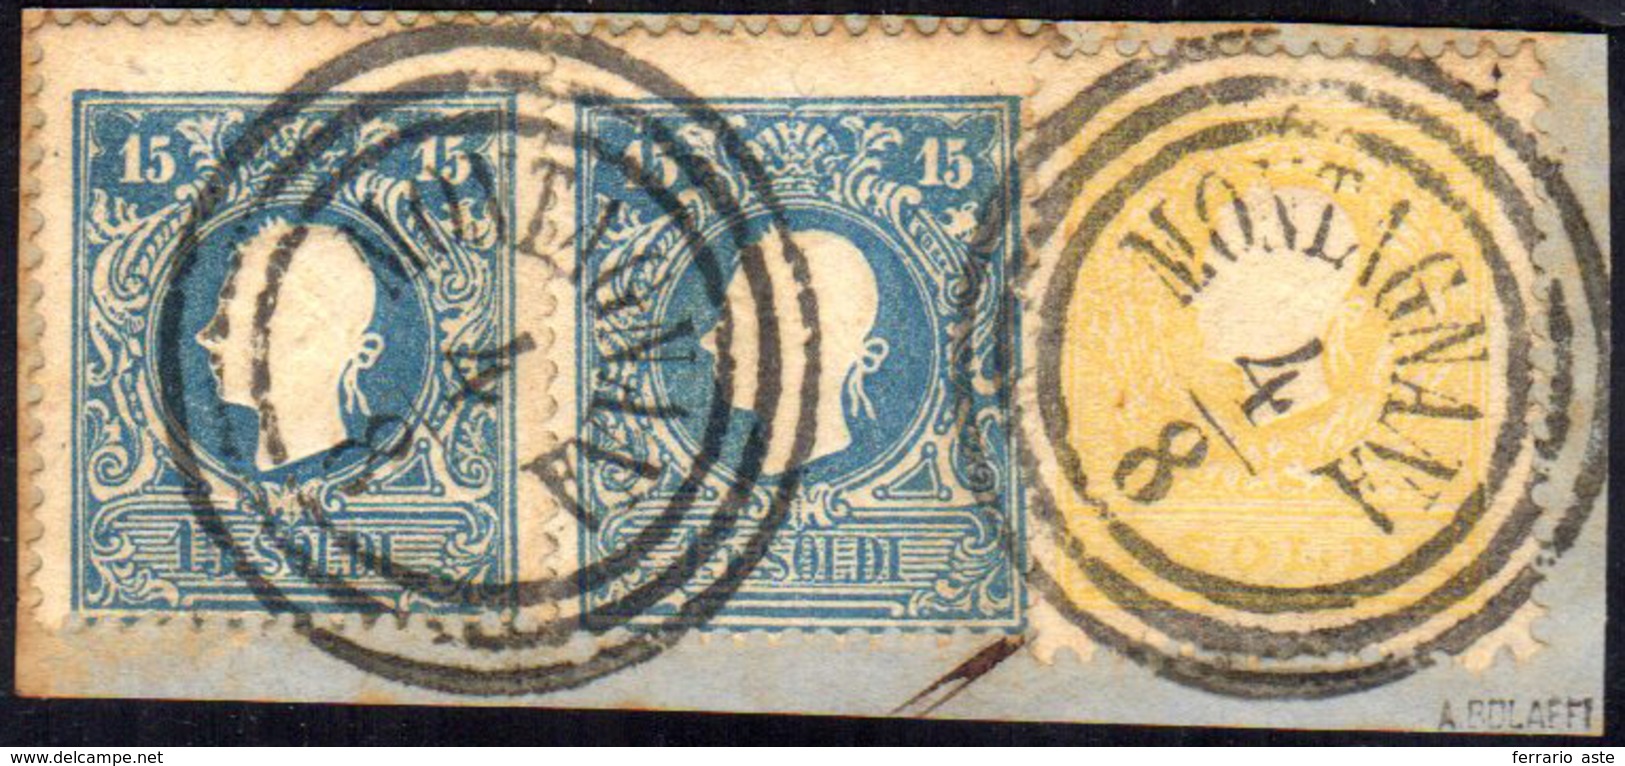 1859 - 2 Soldi Giallo, 15 Soldi Azzurro, Tutti II Tipo (28,32), Perfetti, Usati Su Piccolo Frammento... - Lombardije-Venetië